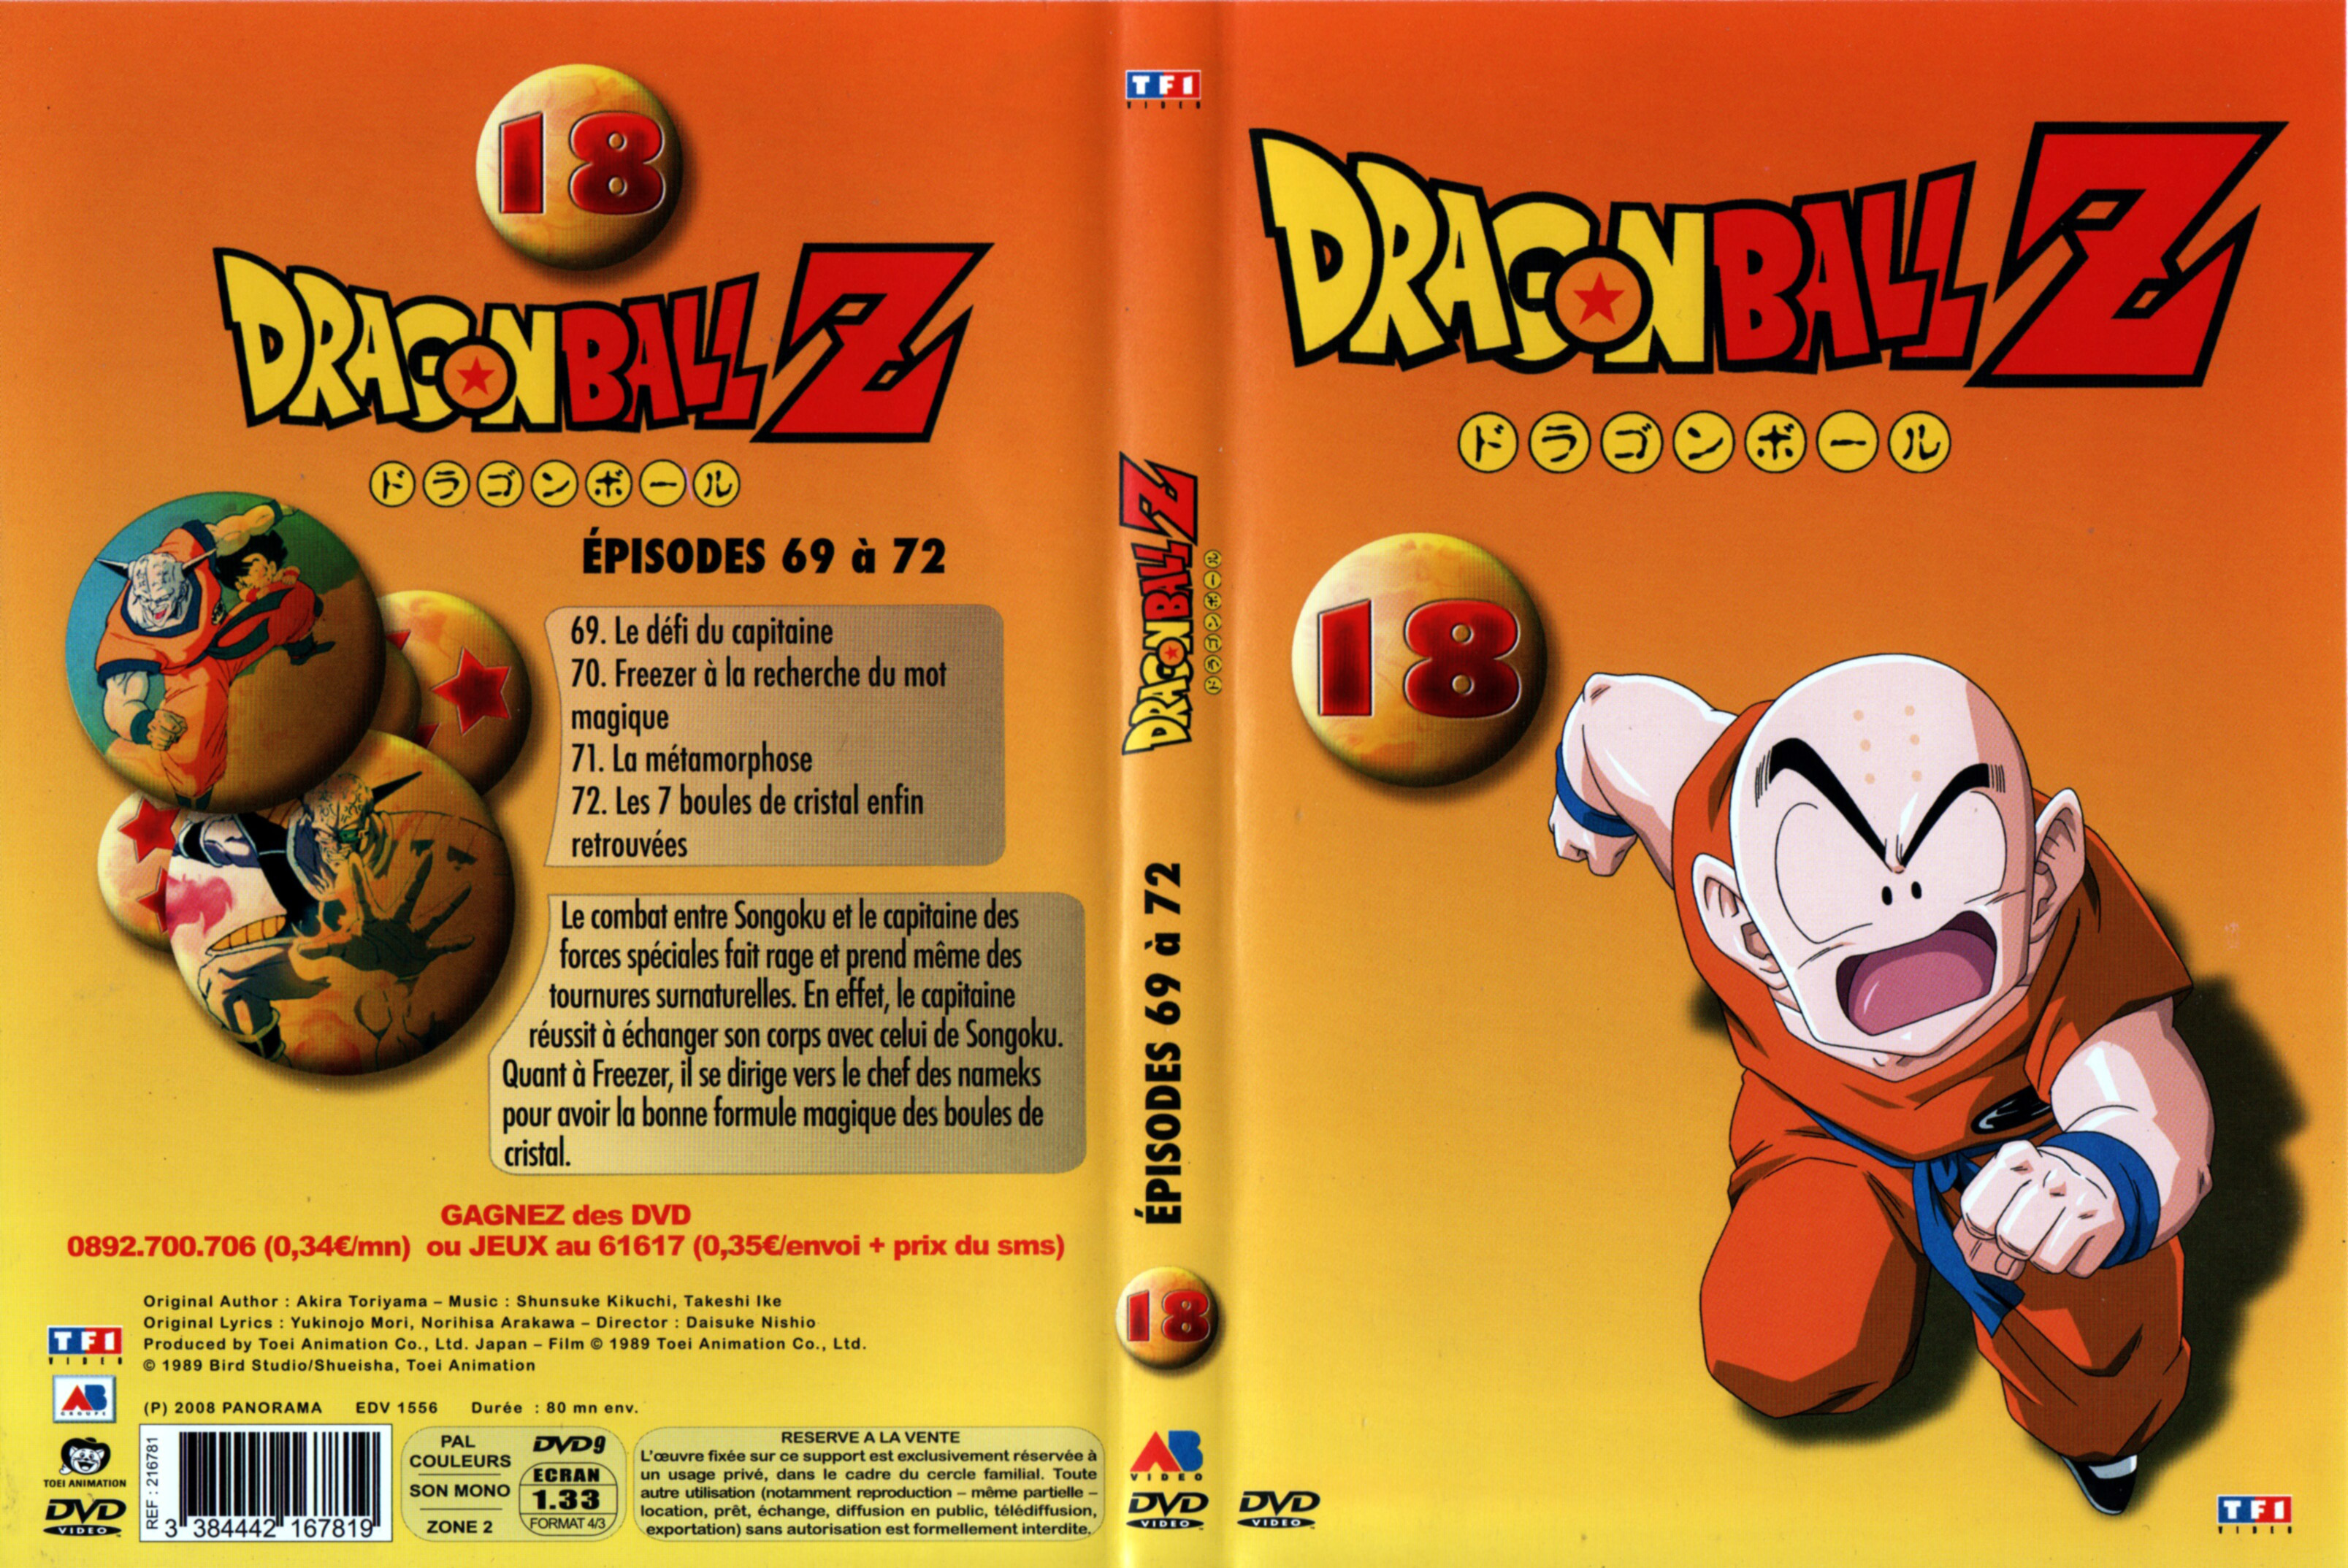 Jaquette DVD Dragon ball Z vol 18 v3